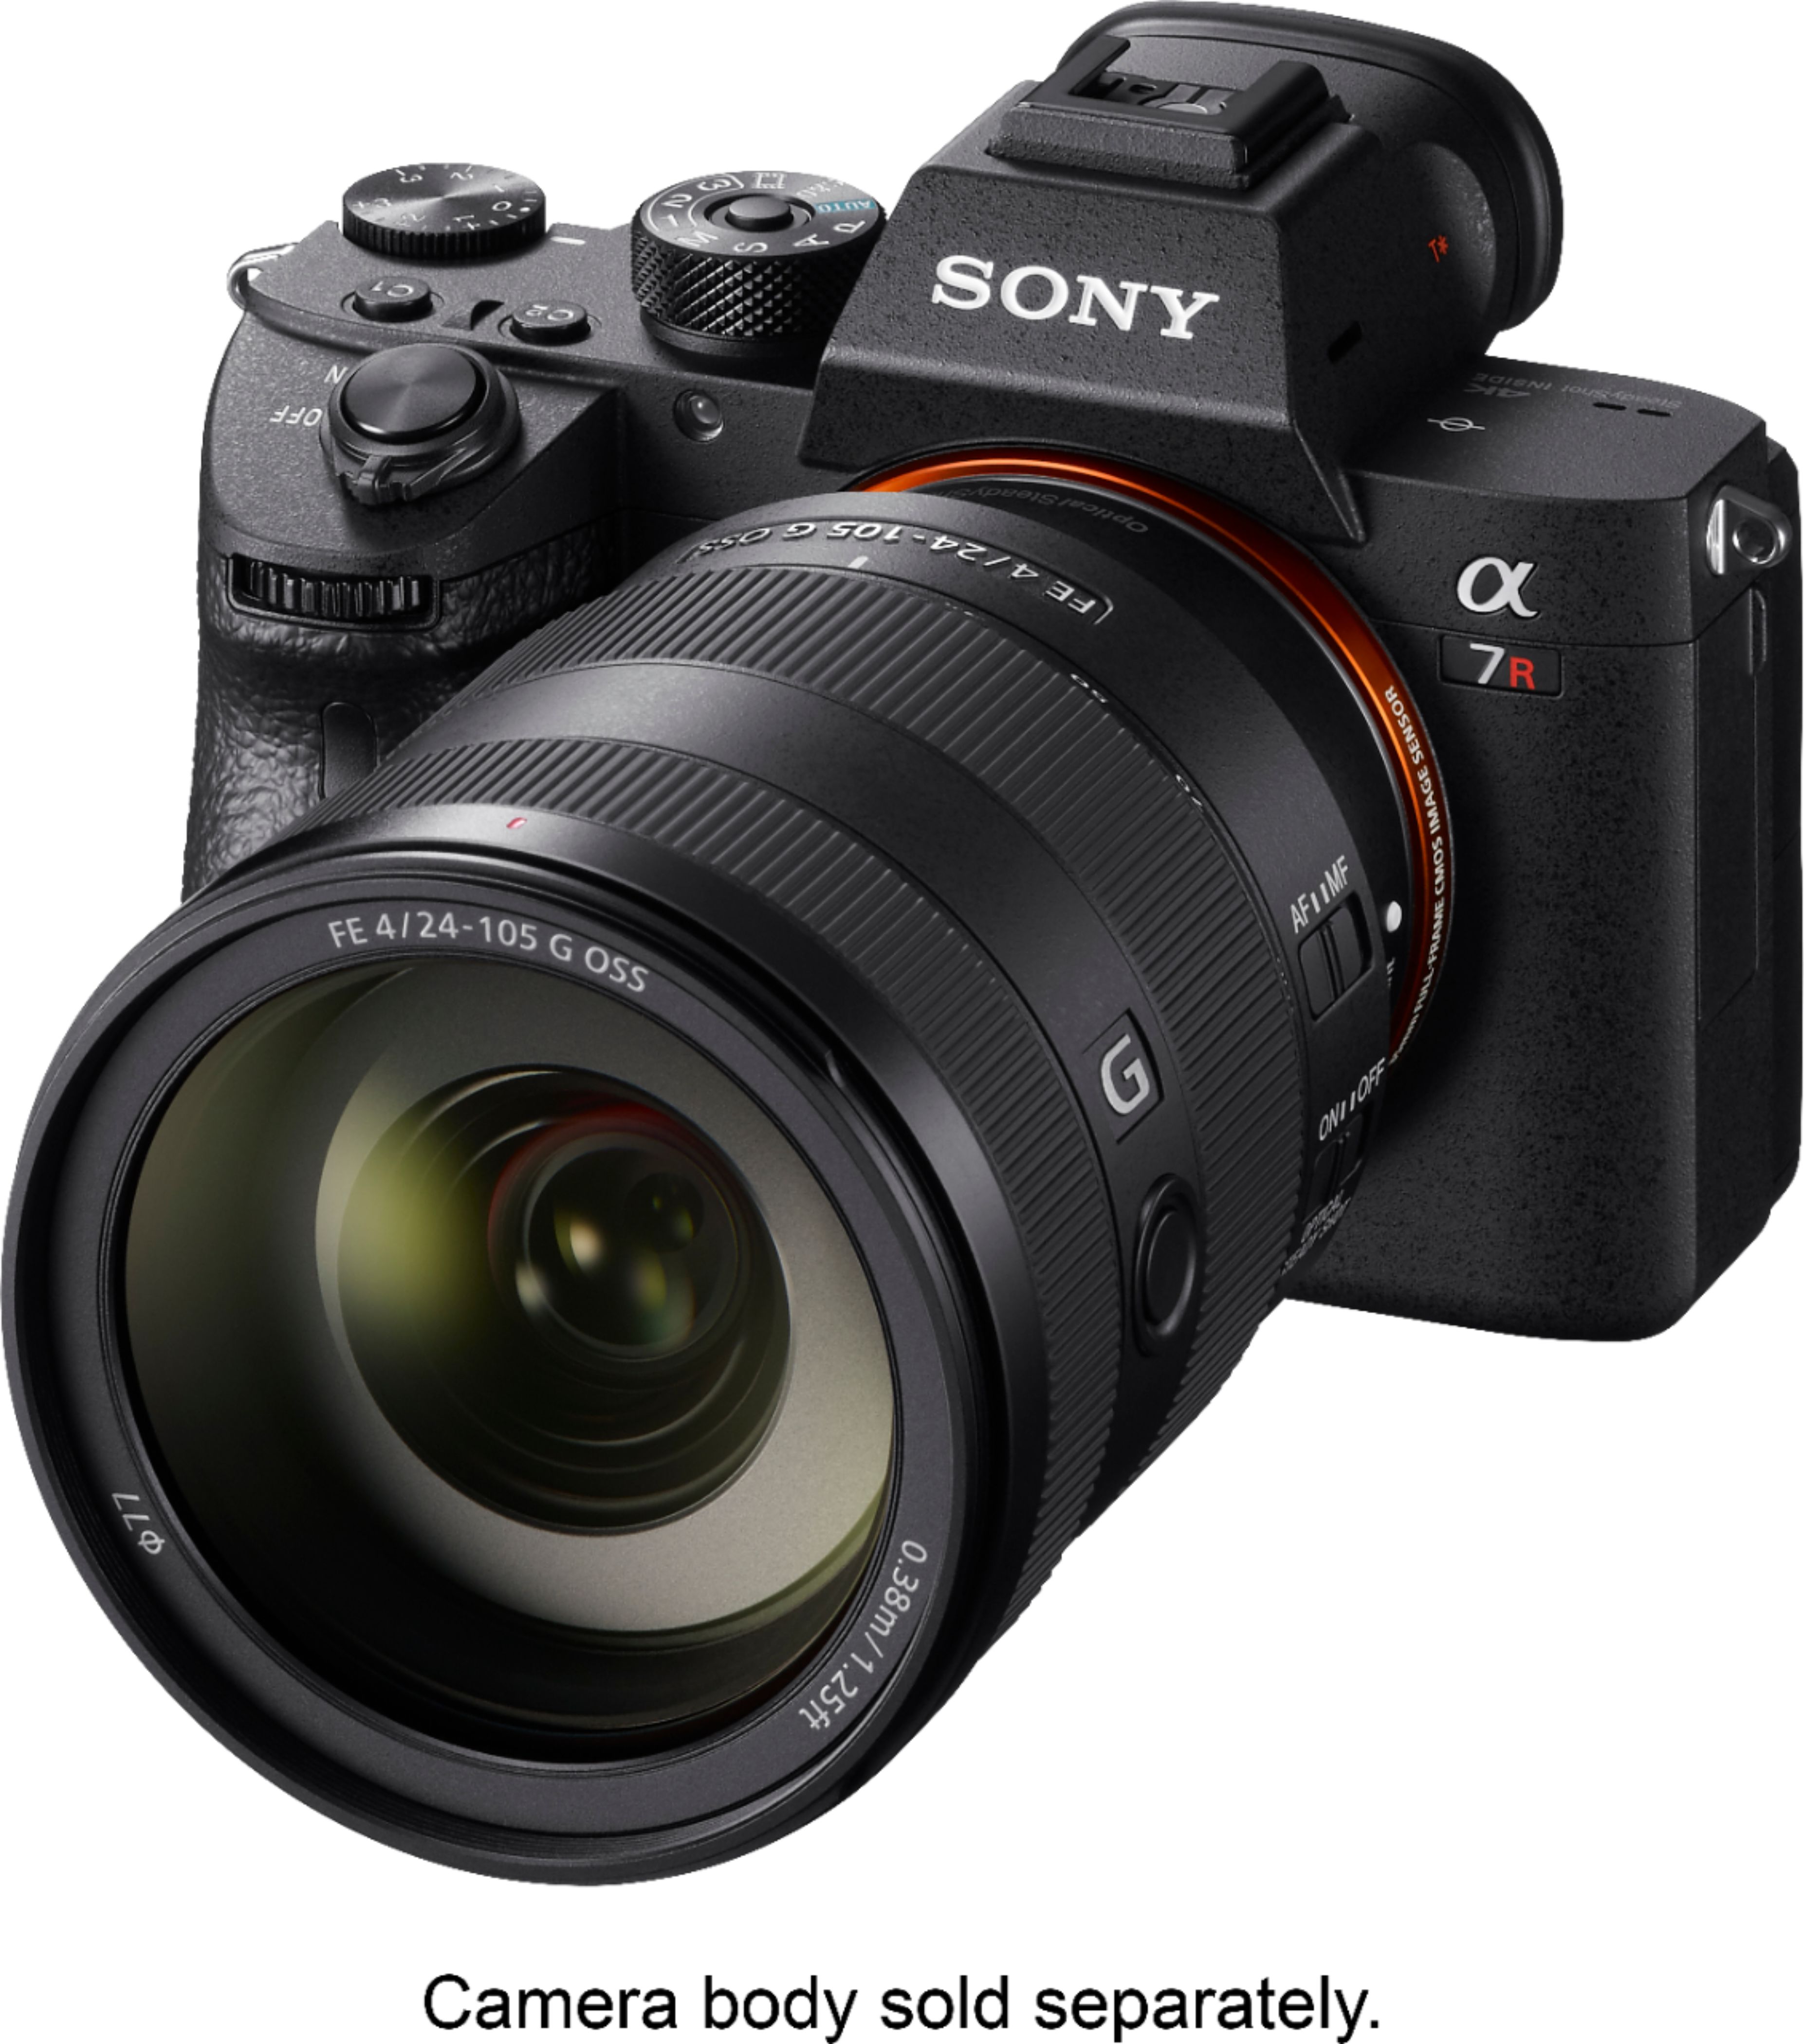 Sony G 24-105mm f/4 G OSS Standard Zoom Lens for E-mount Cameras 